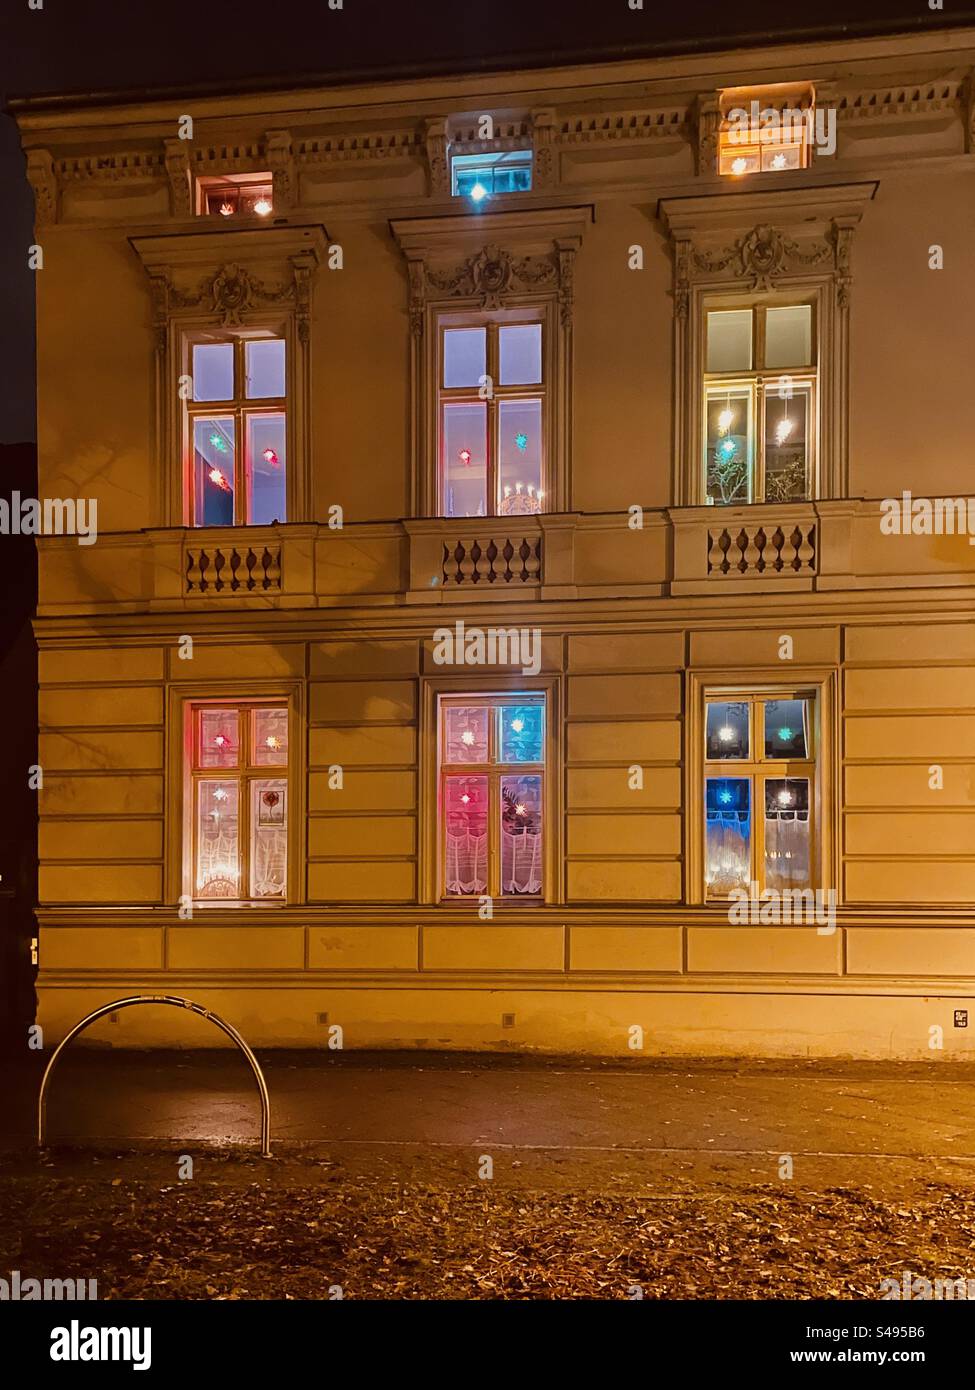 Weihnachtliche Fenster im Altbauhaus in Potsdam Babelsberg. Sterne leuchten in vielen verschiedenen Farben. Stock Photo